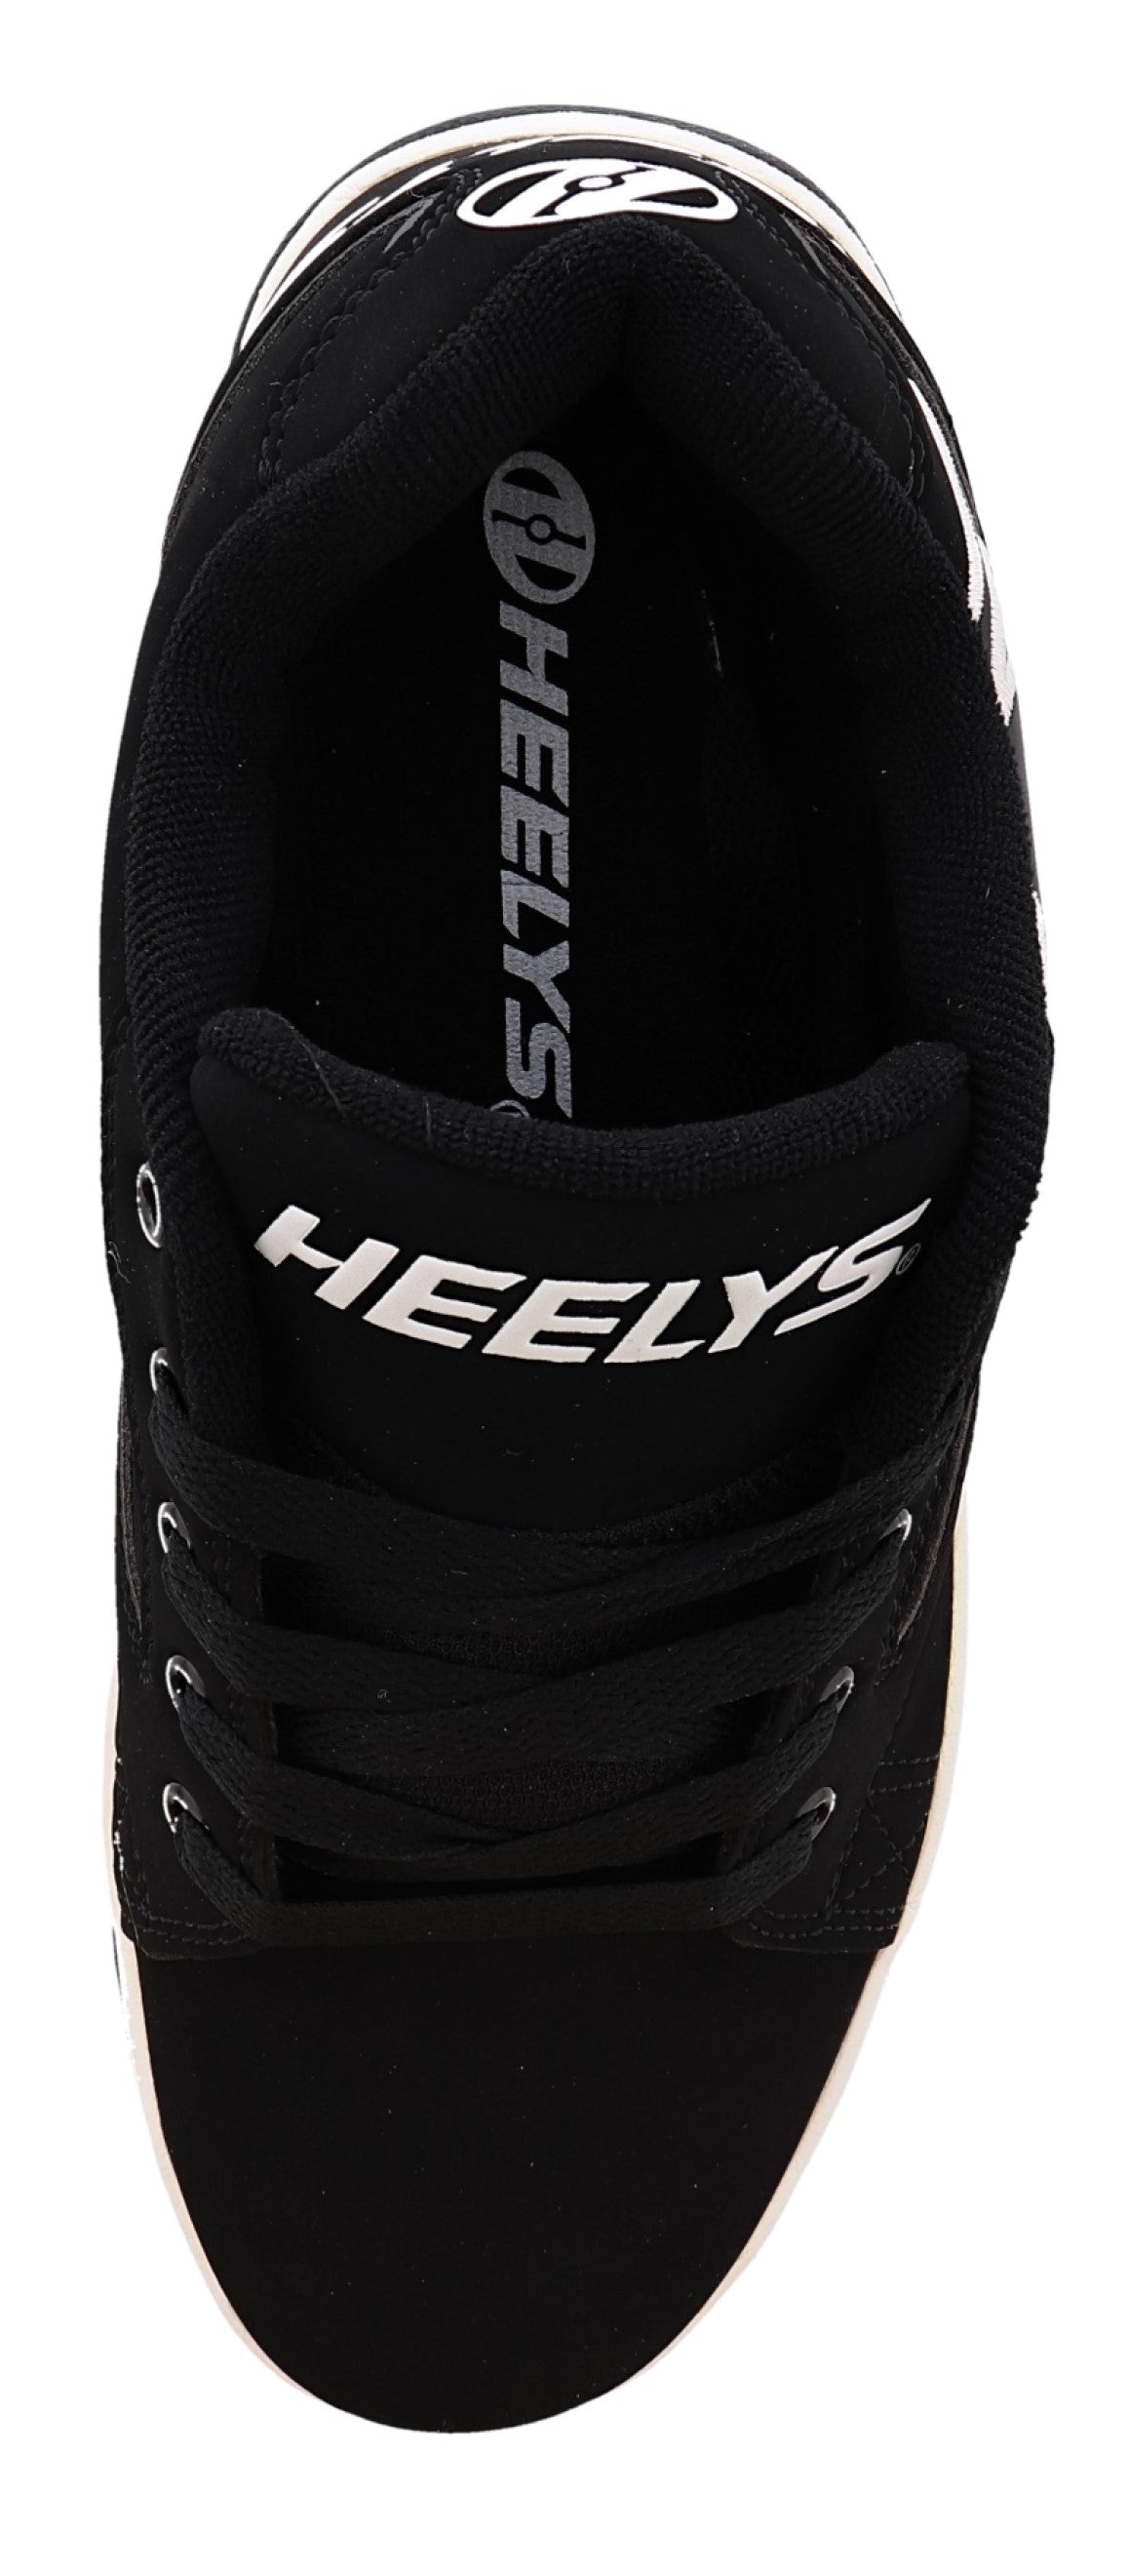 
                  
                    Top of Heelys Shoes for Men Propel 2.0
                  
                